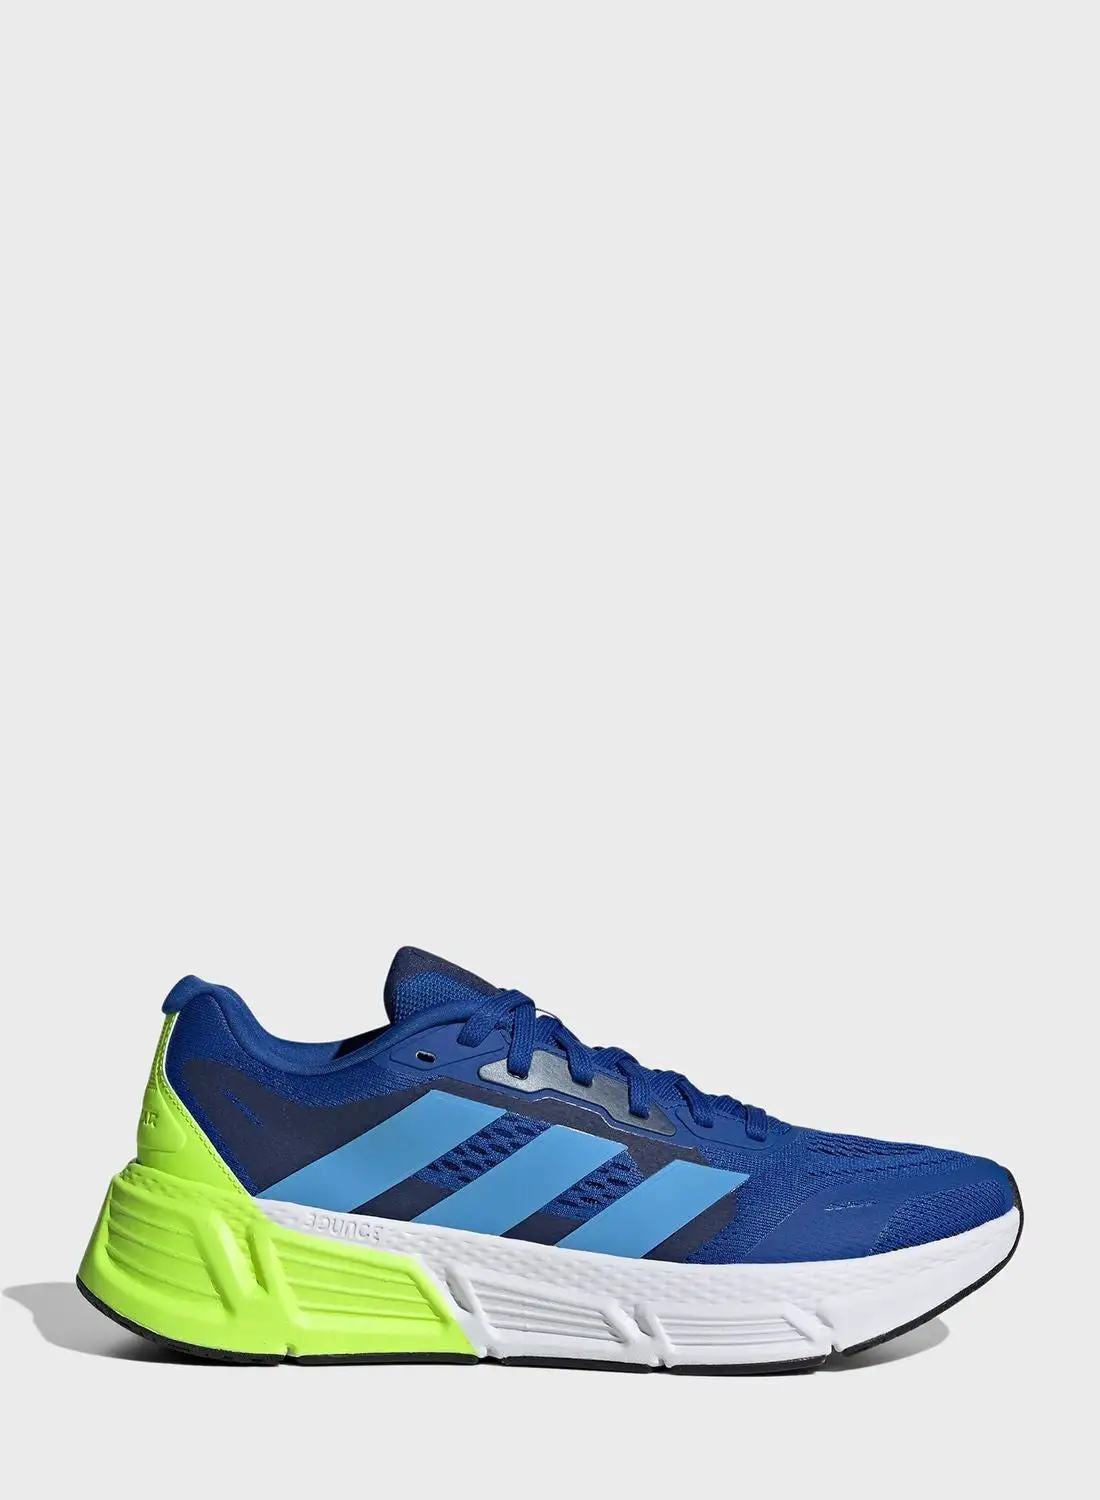 Adidas Questar 2 M